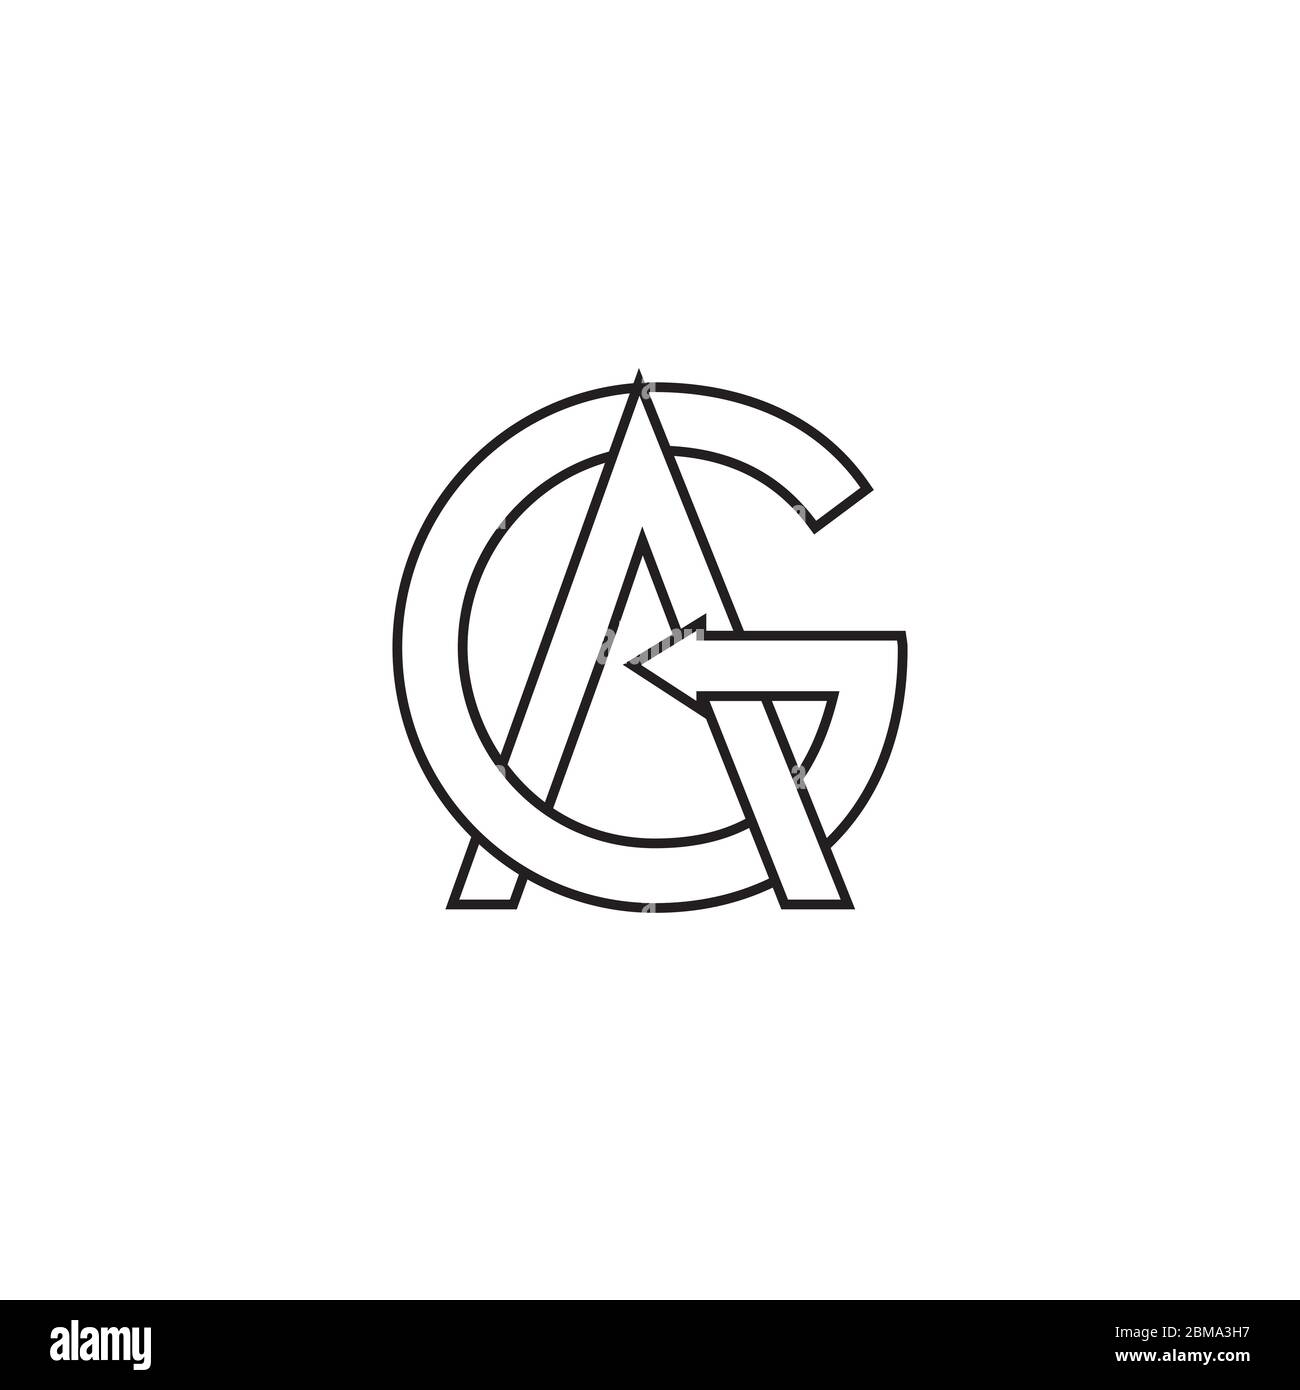 G A / A G letter lines logo design vector Stock Vector